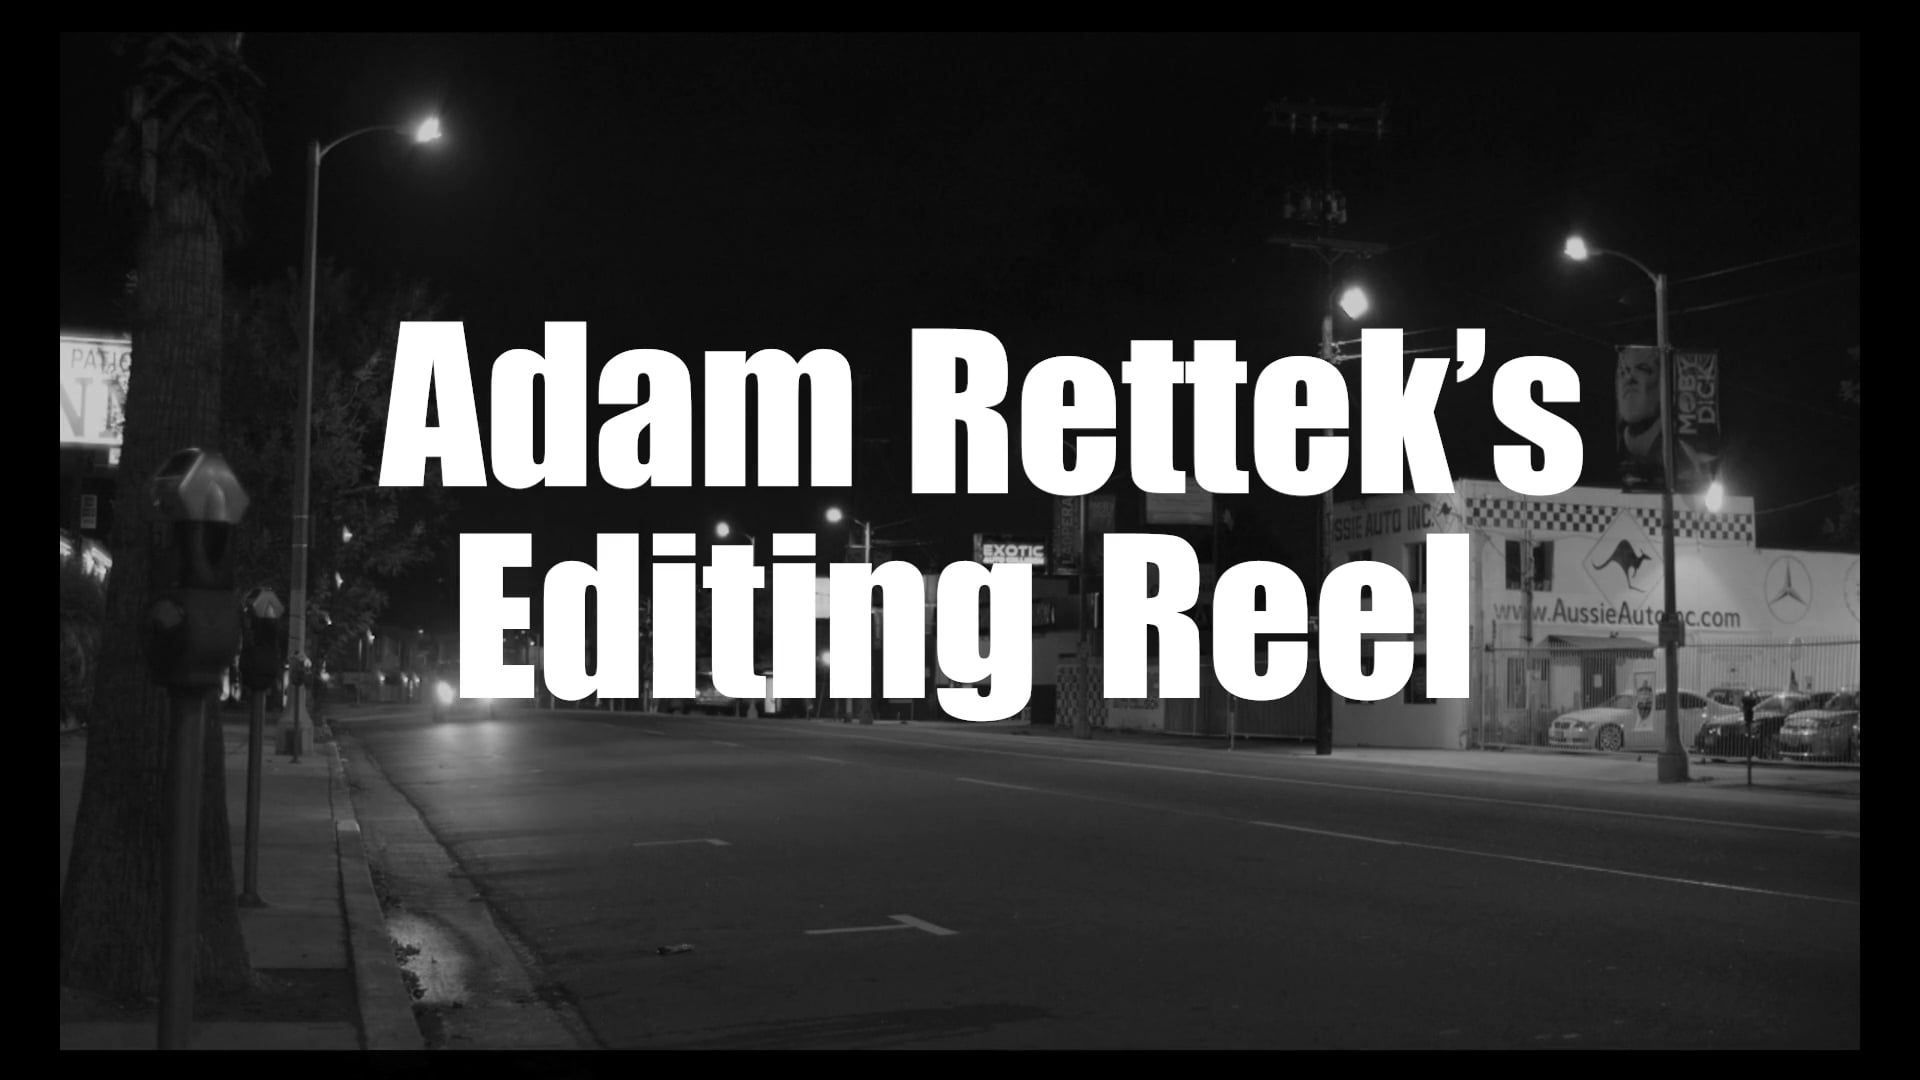 Adam Rettek's Editing Demo Reel